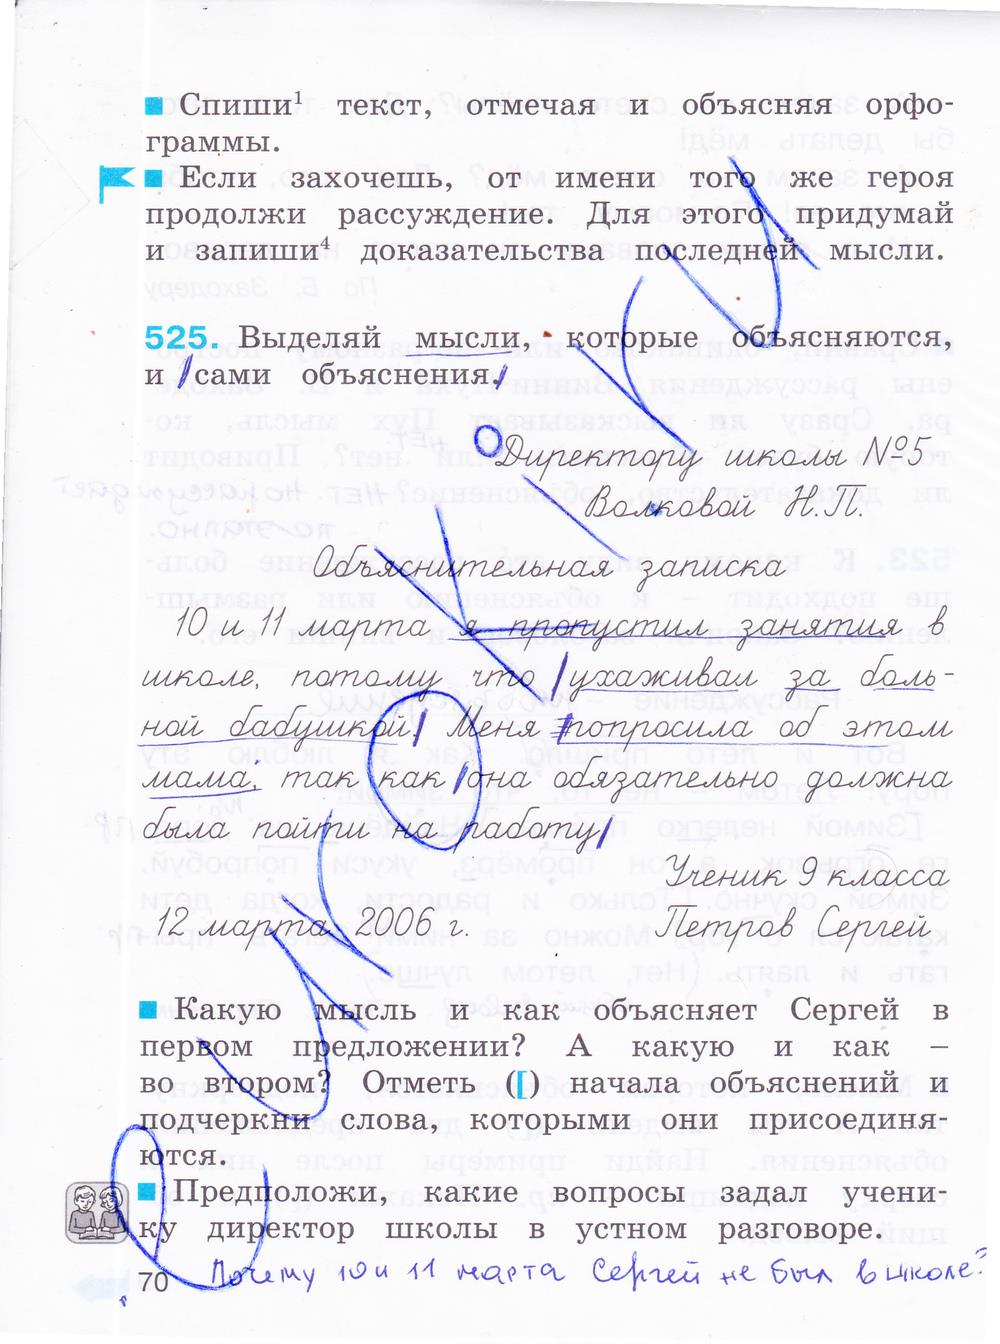 гдз 4 класс рабочая тетрадь часть 2 страница 70 русский язык Соловейчик, Кузьменко